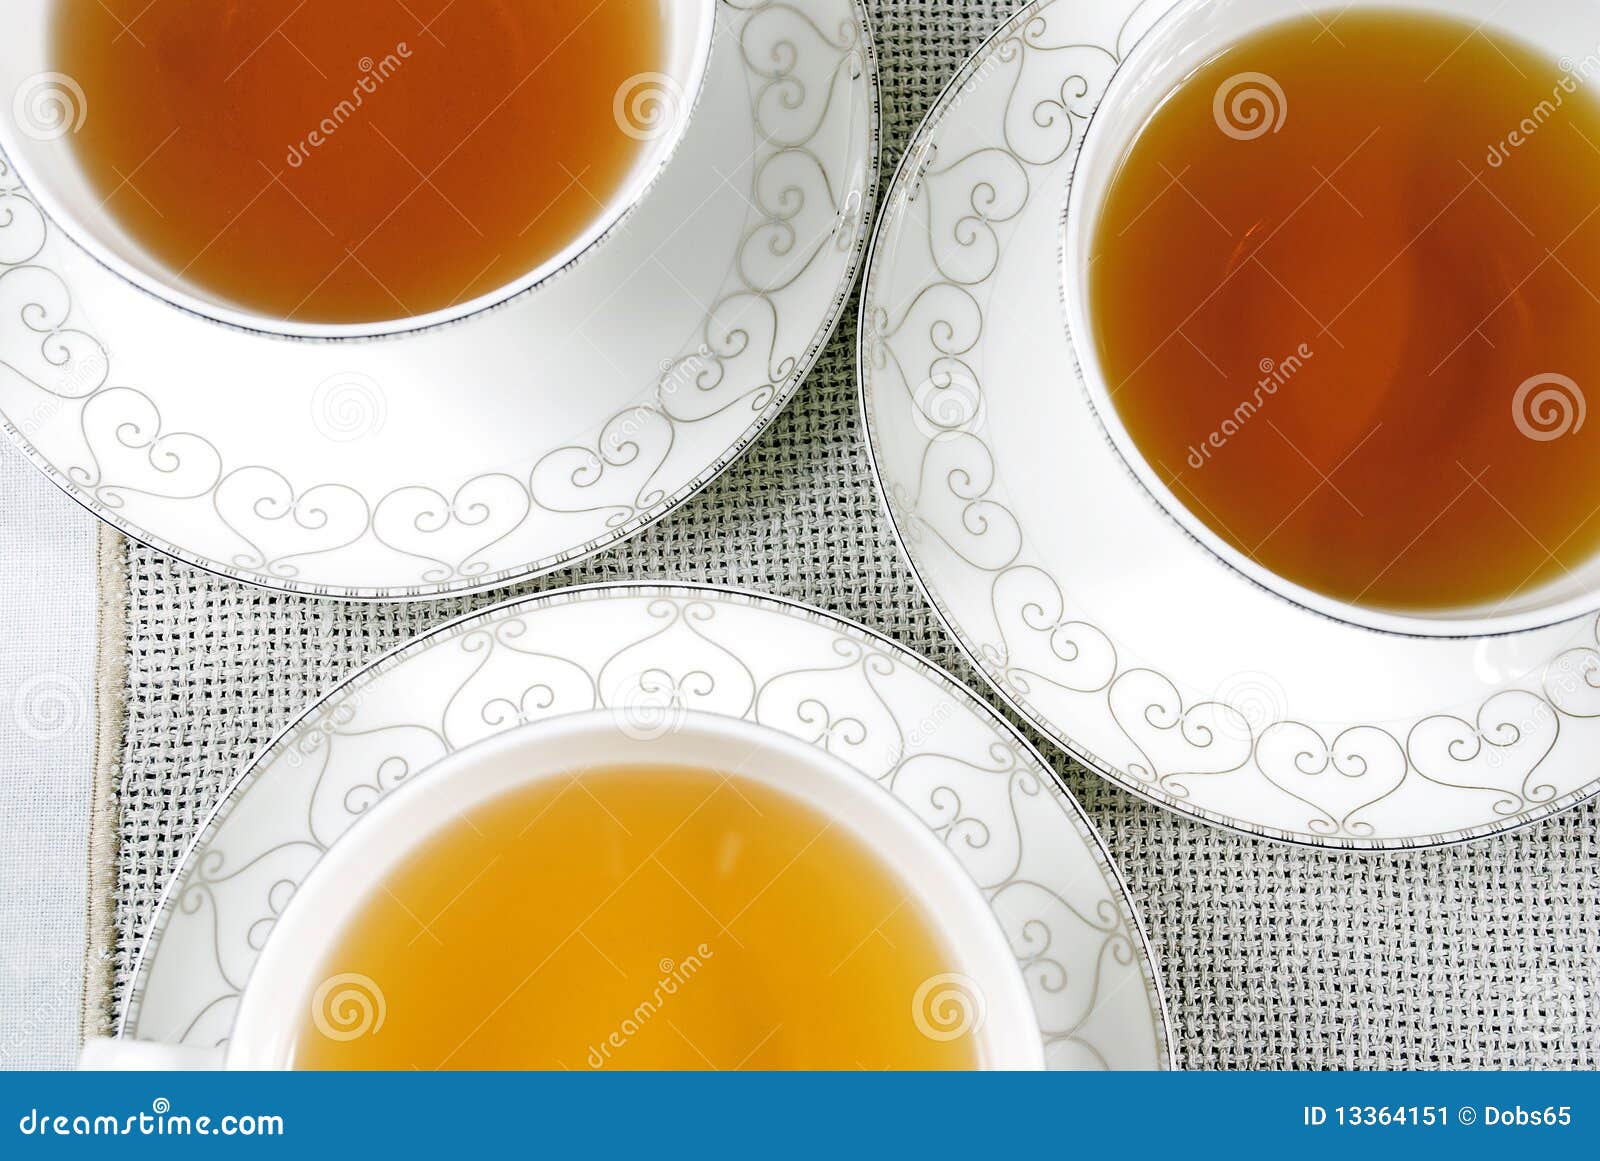 Three Cups Tea Pdf Free